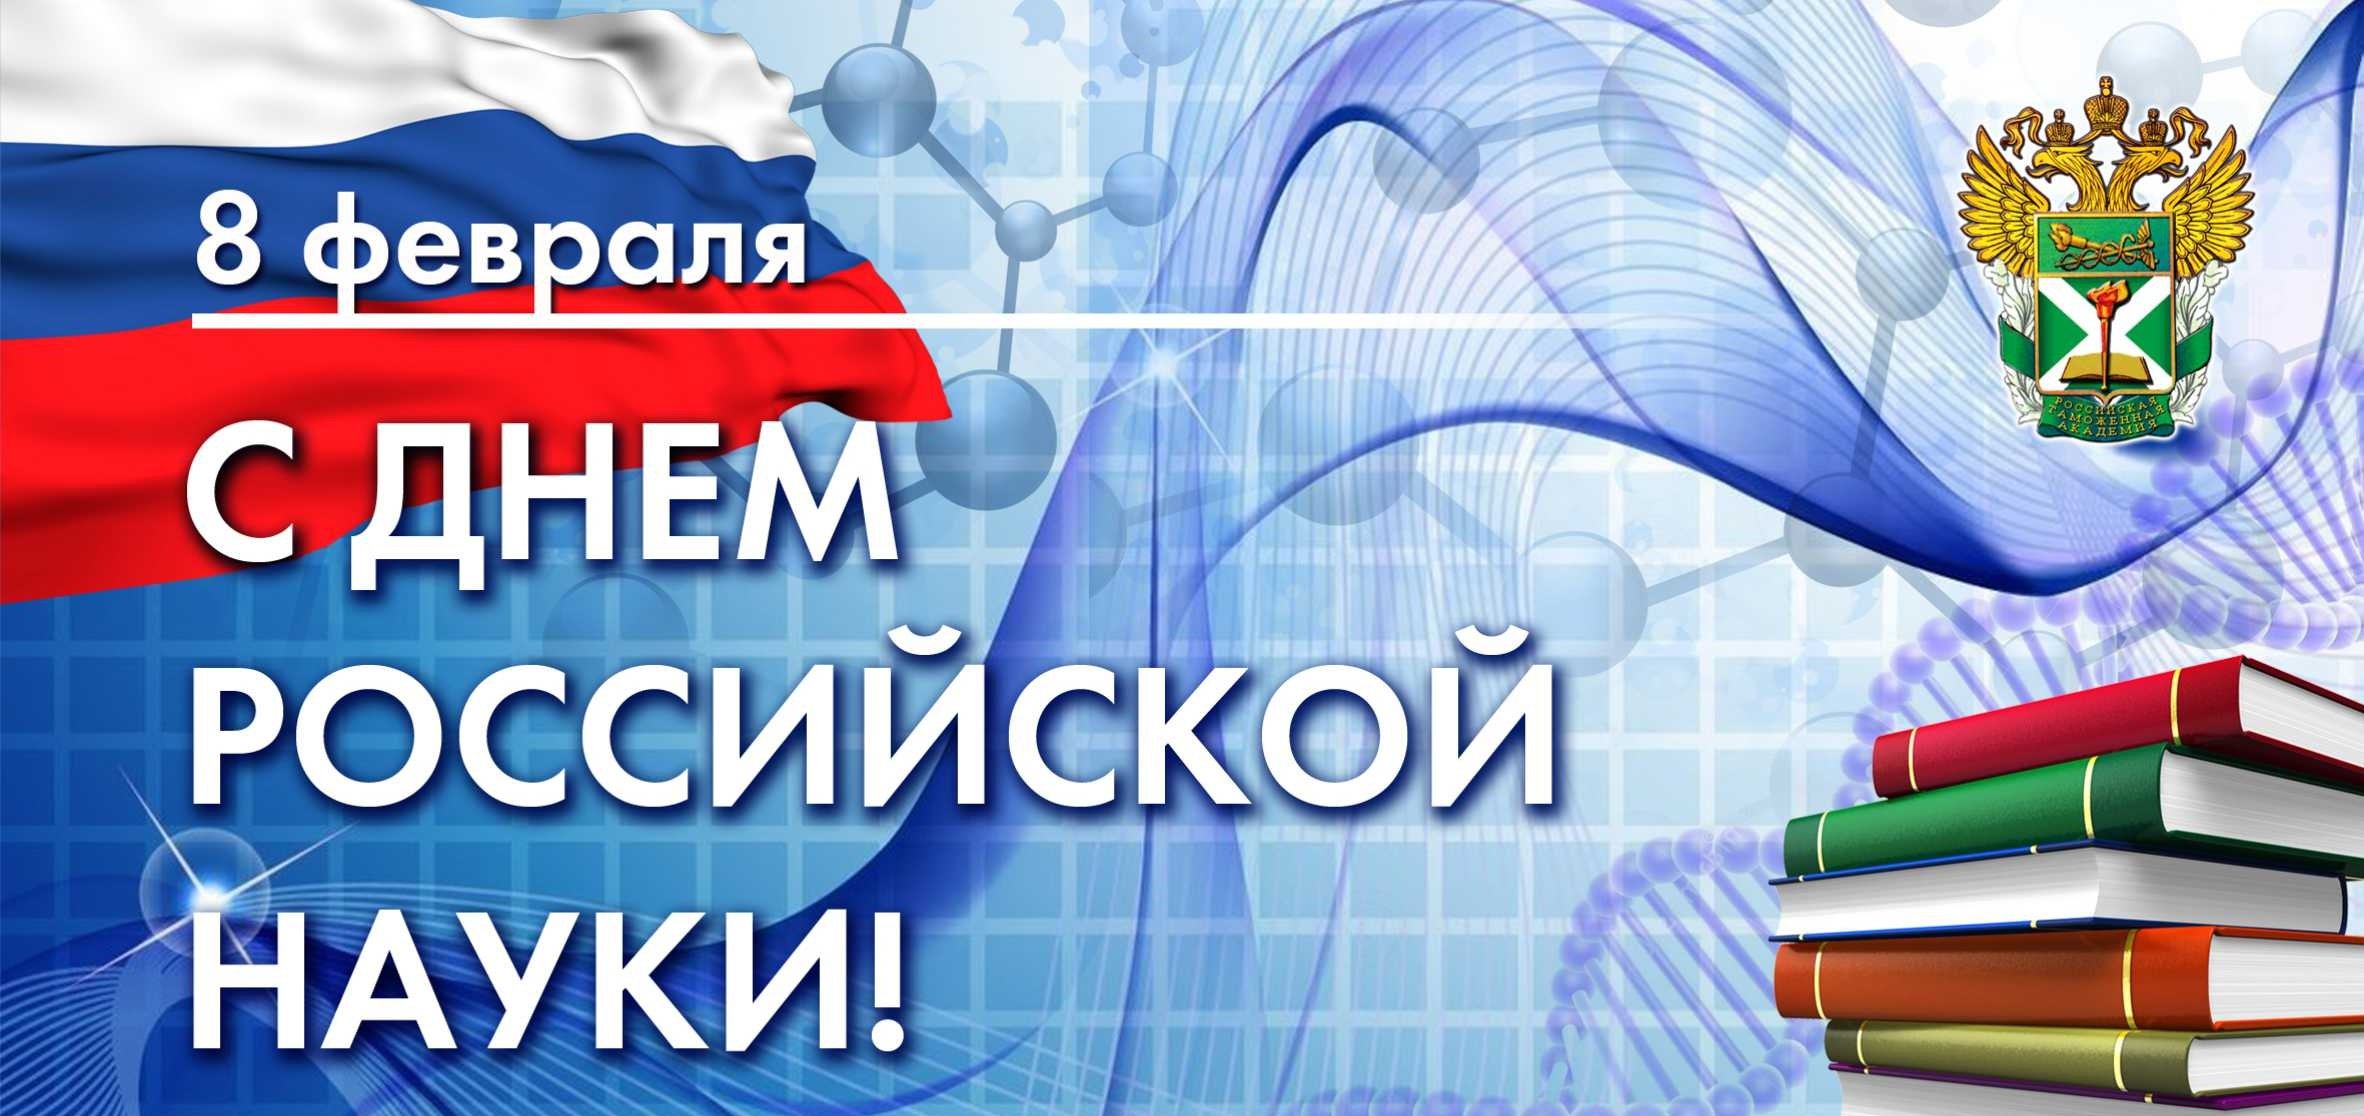 8 февраля  - День российской науки.